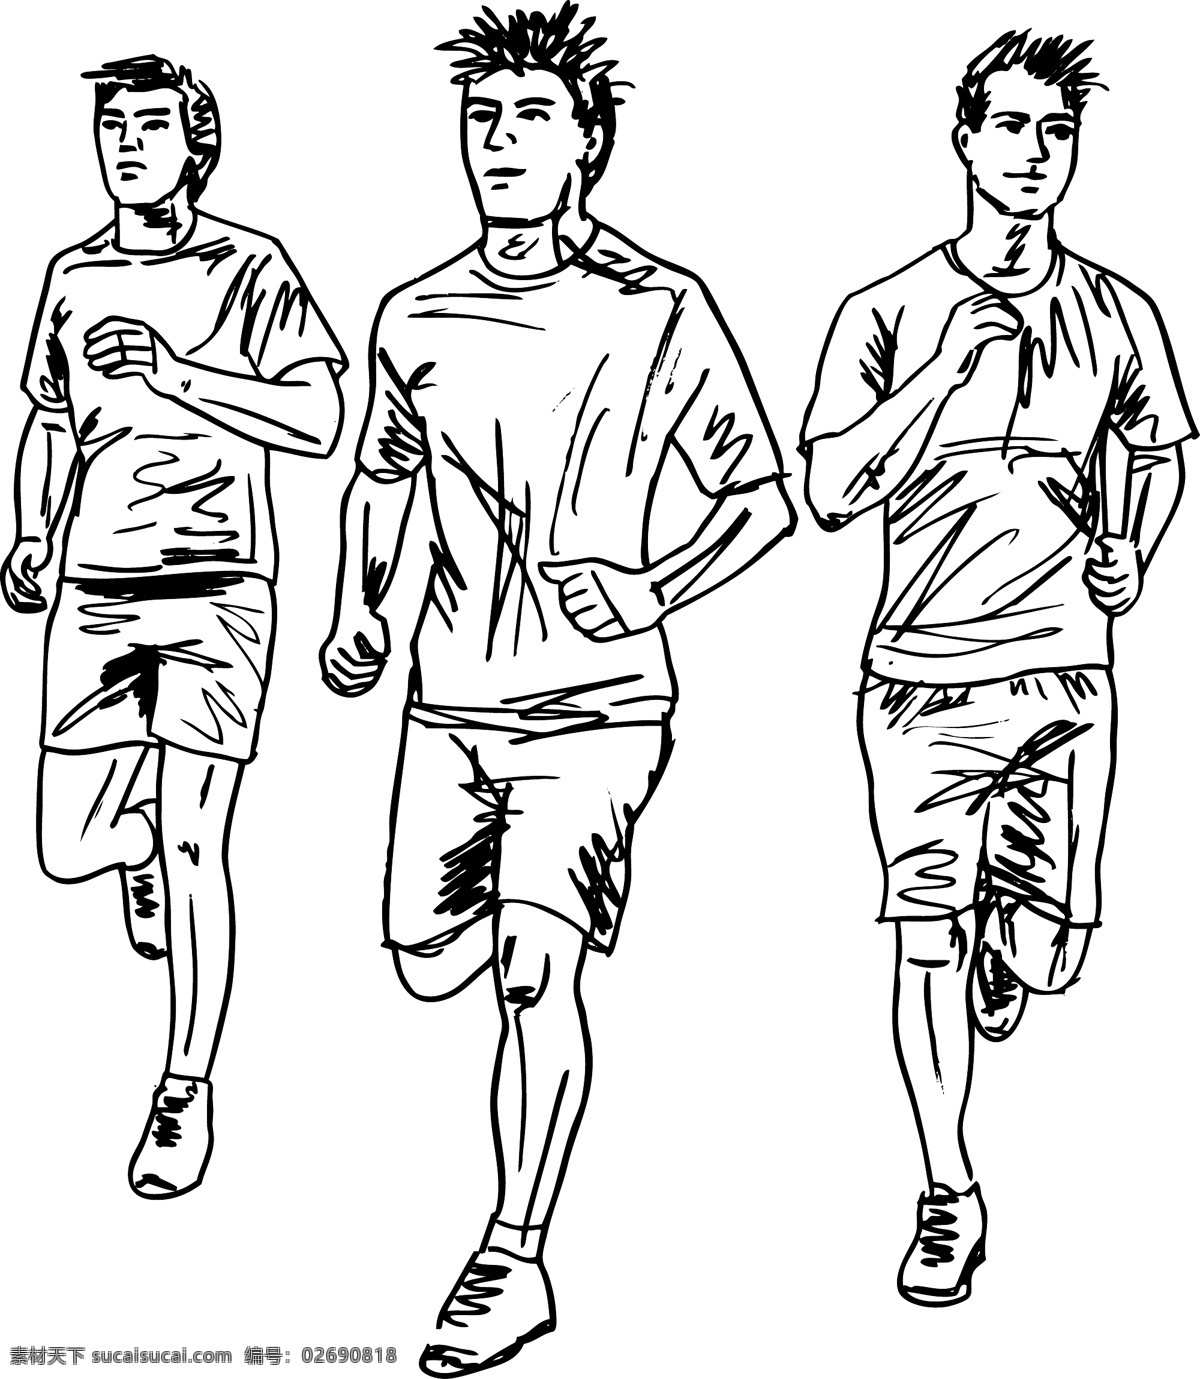 男子 马拉松 运动员 矢量 插画 草图 矢量图 日常生活